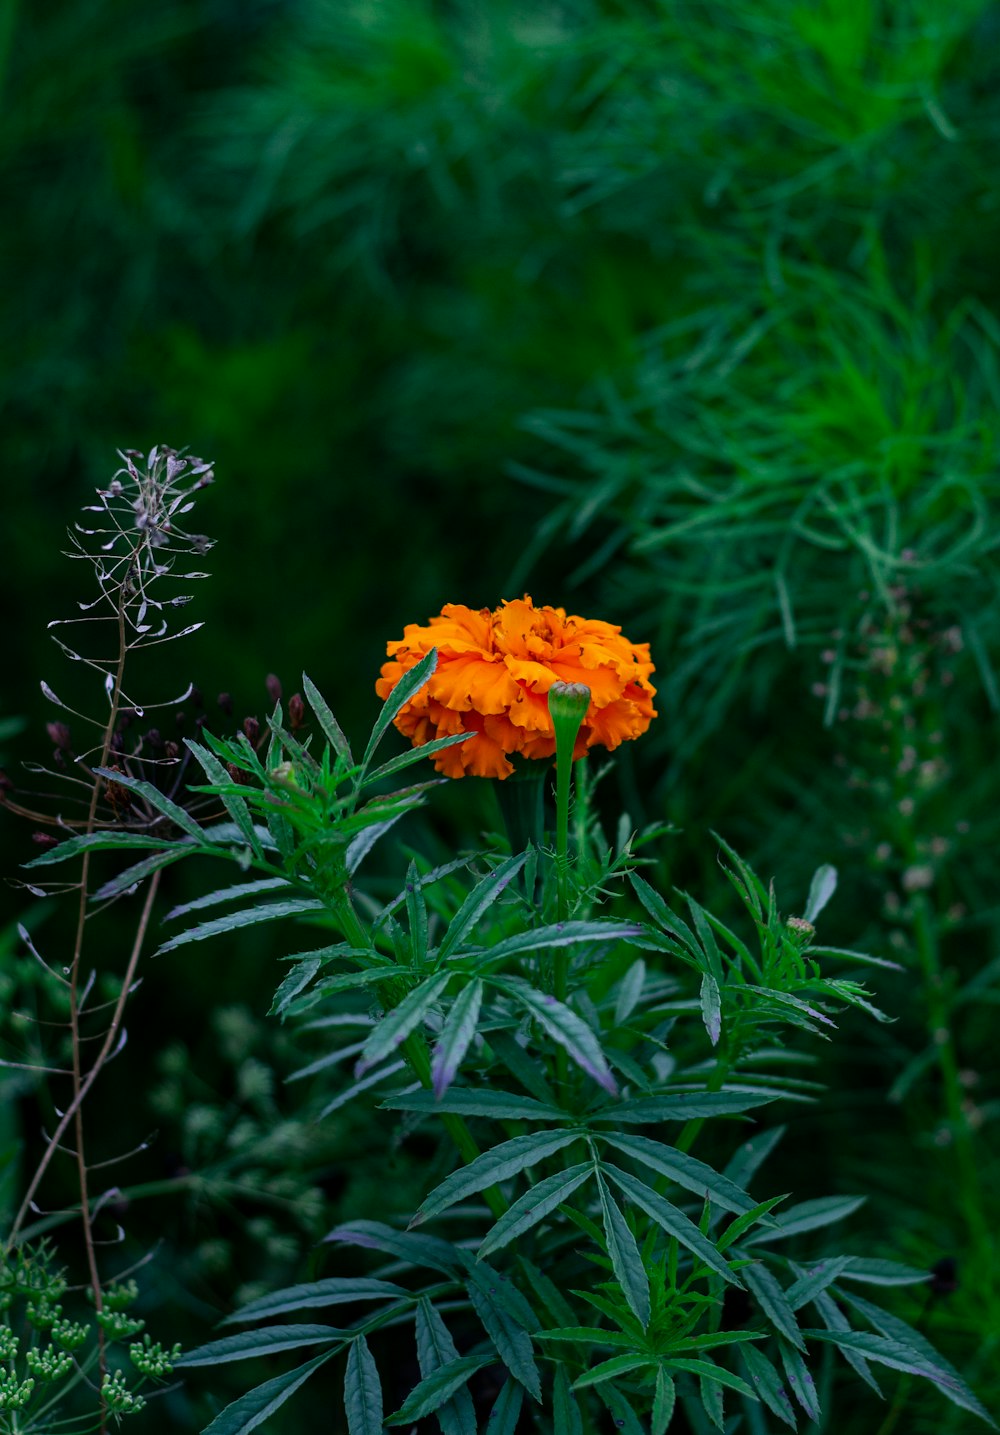 a single orange flower in a green field